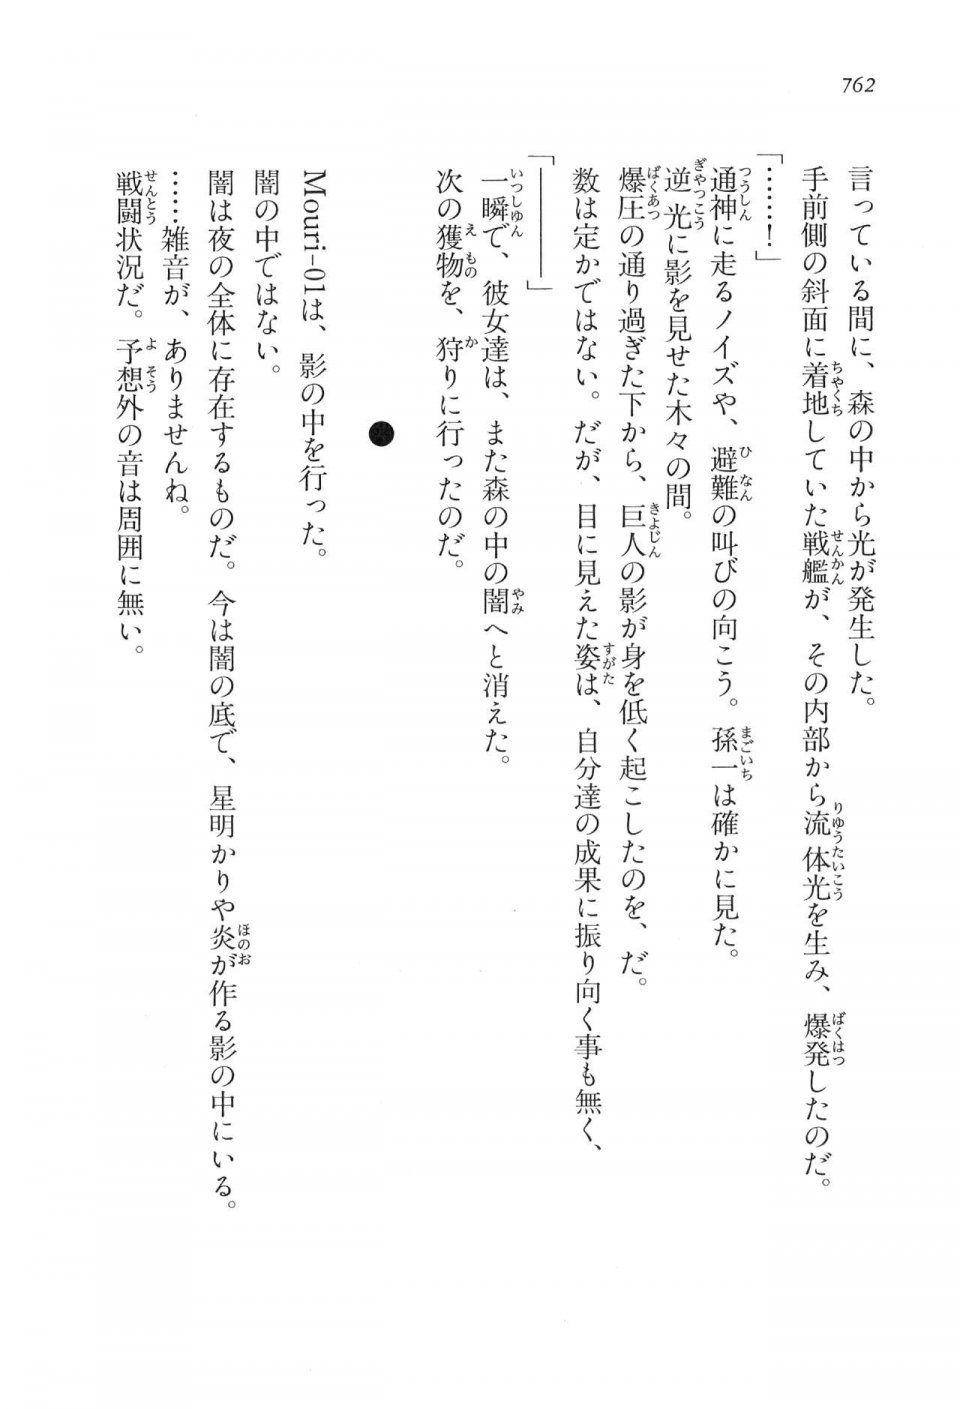 Kyoukai Senjou no Horizon LN Vol 16(7A) - Photo #762